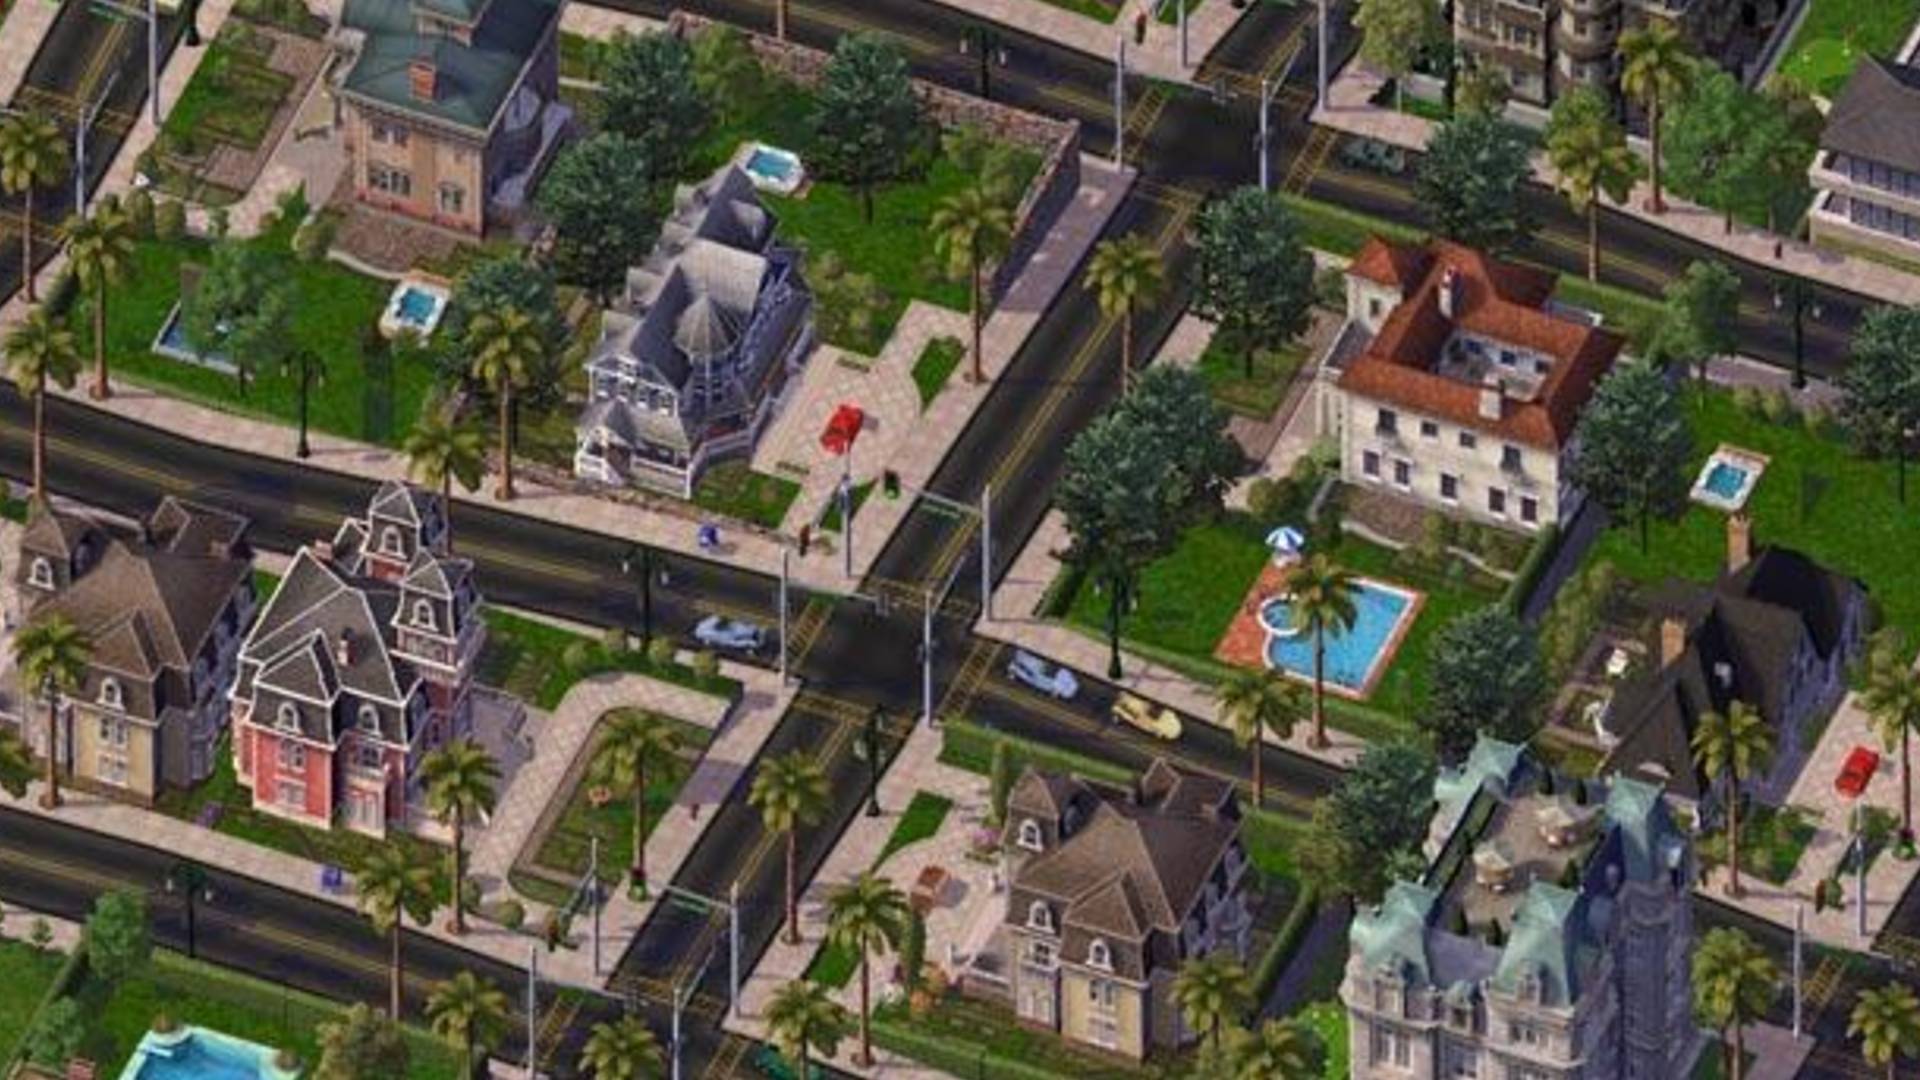 ベストシティビルディングゲーム：Simcity 4.画像は、裕福な郊外の風景を示しています。